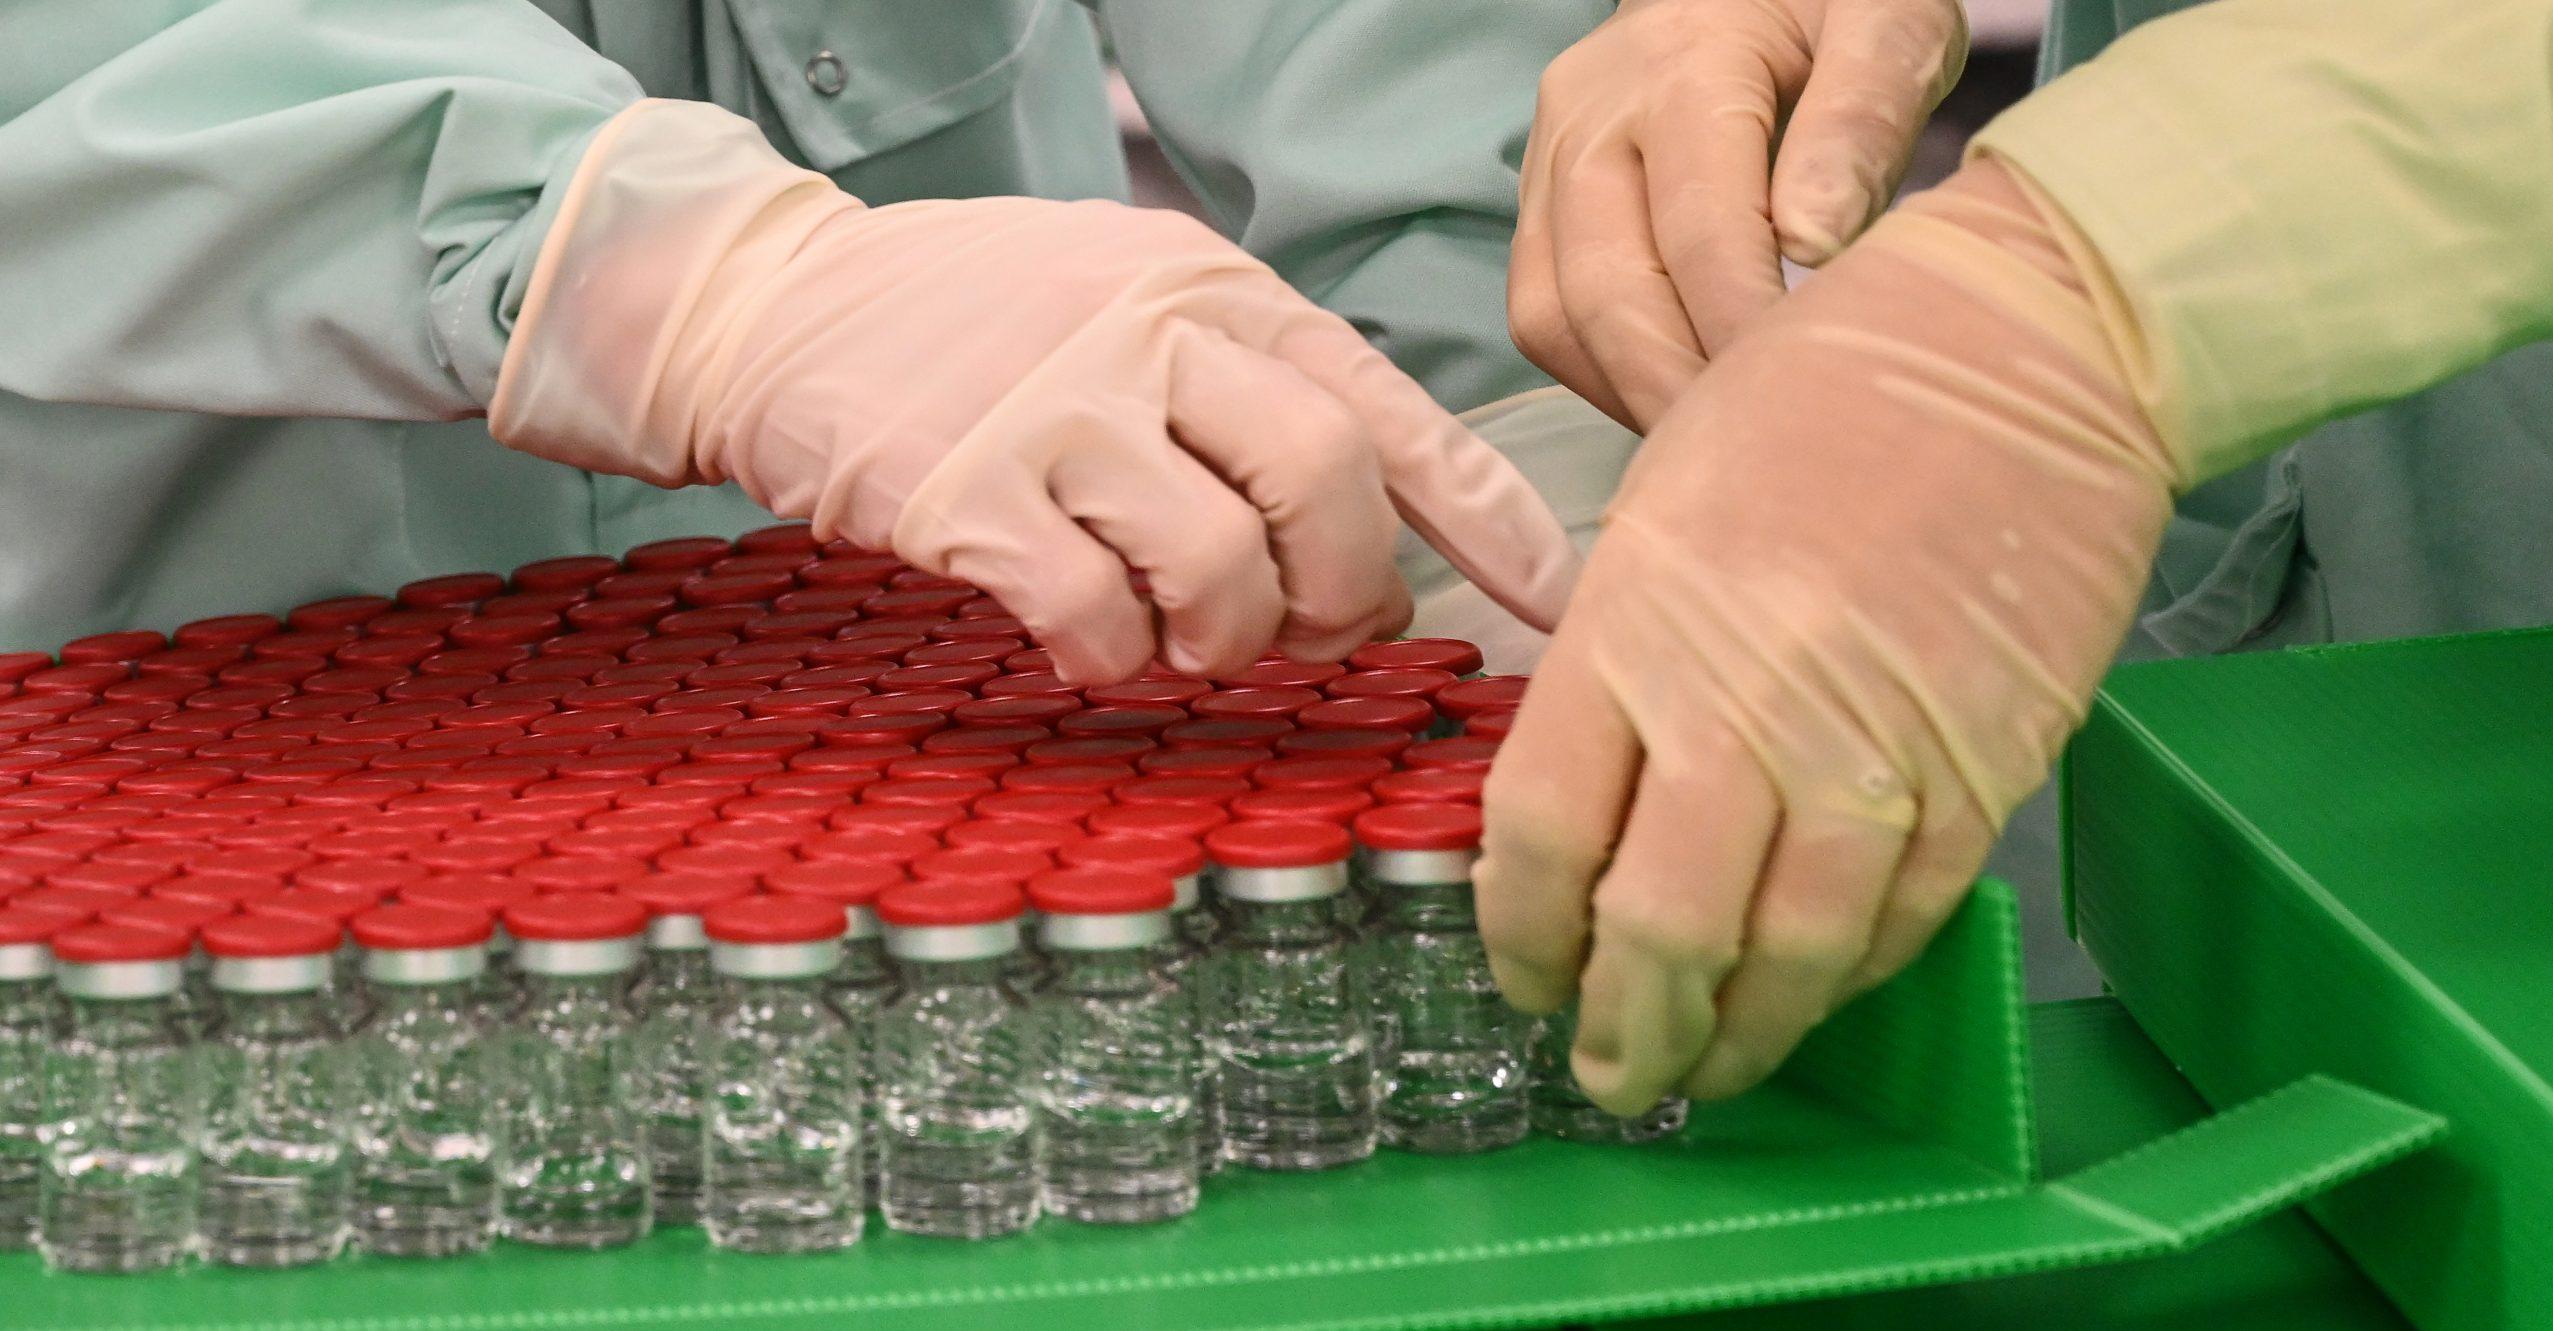 Vacuna contra COVID de Pfizer tiene 95% de efectividad en resultados finales; buscarán comercializarla pronto